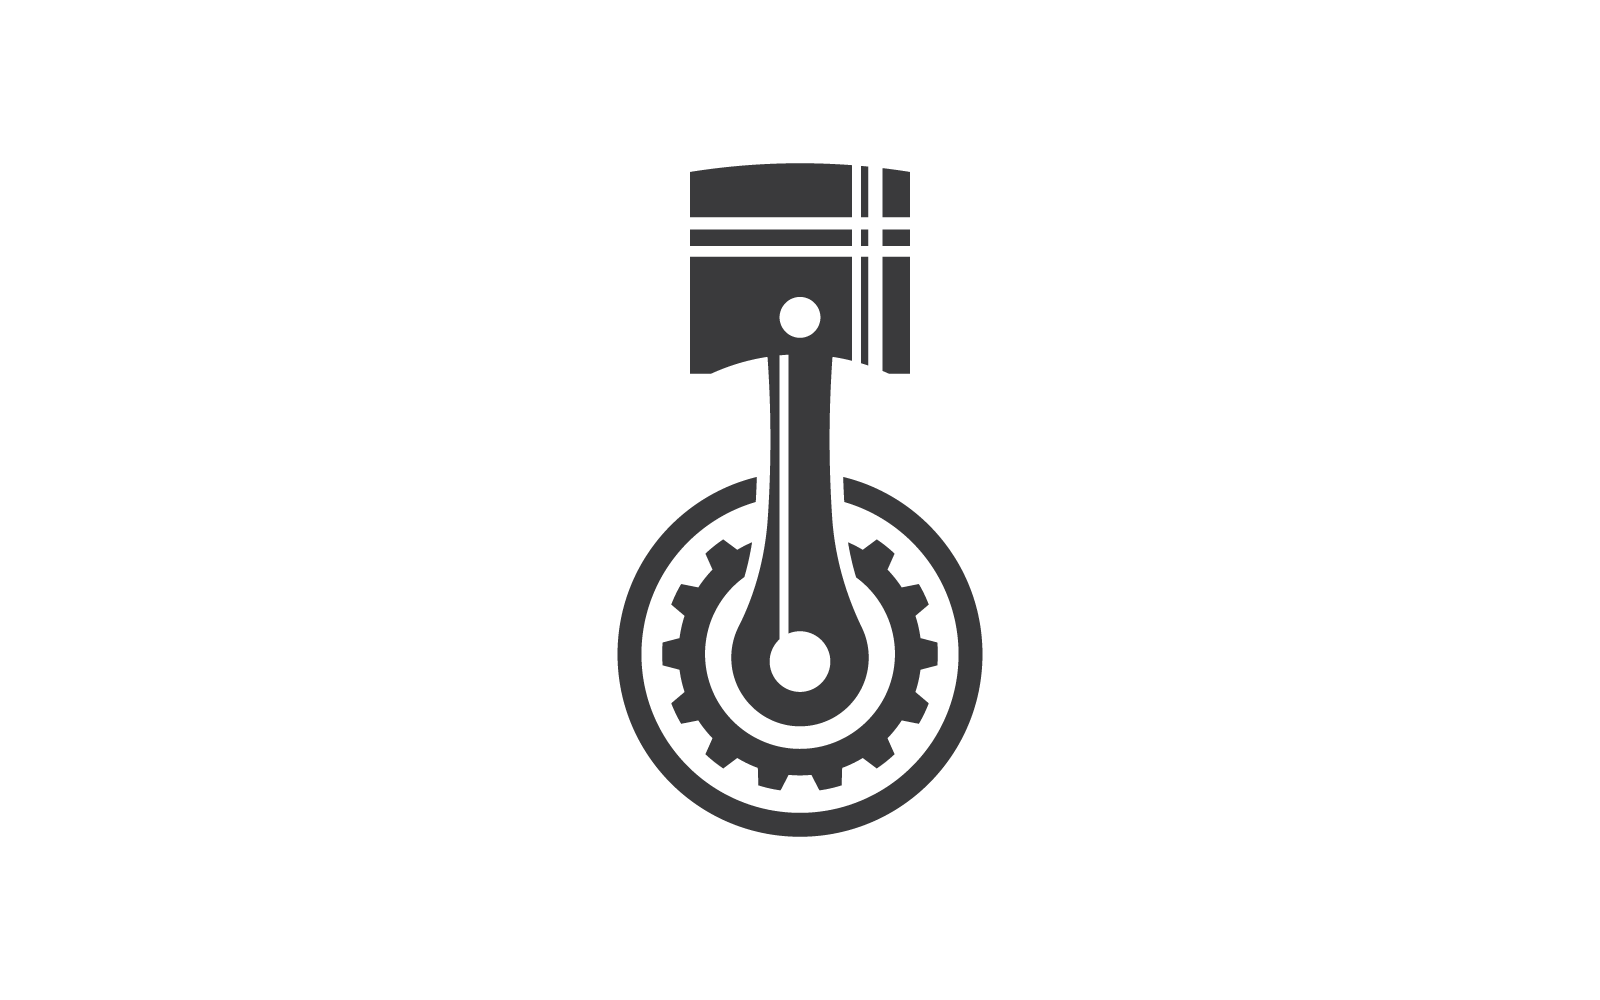 Piston auto service logo icon vector flat design template